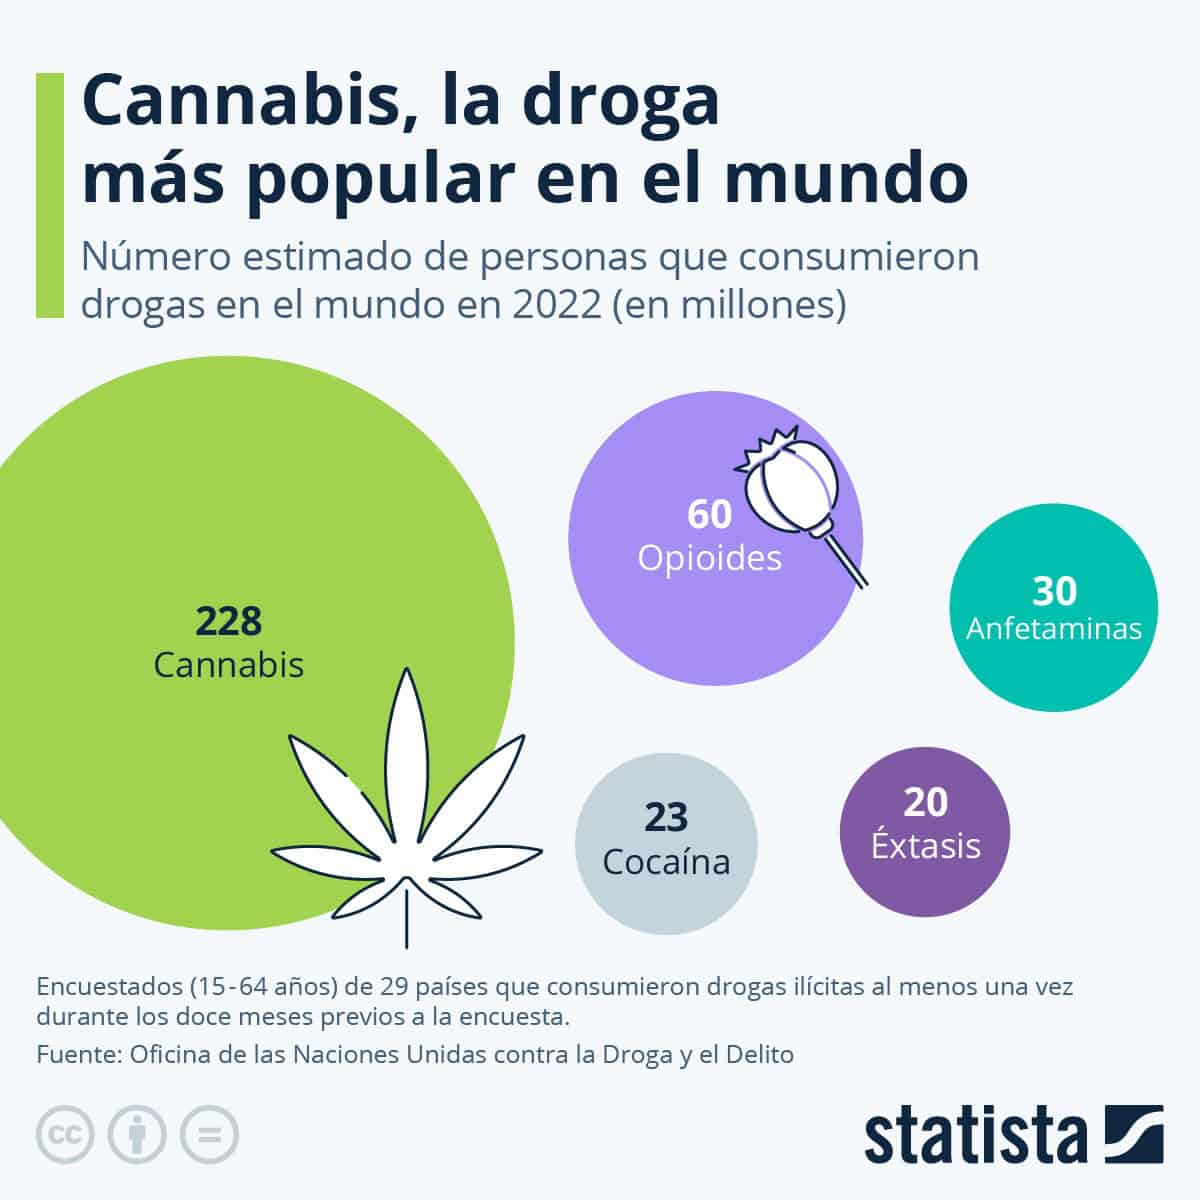 El cannabis es la droga más popular en el mundo; estudio de la ONU revela sus riesgos para la salud mental